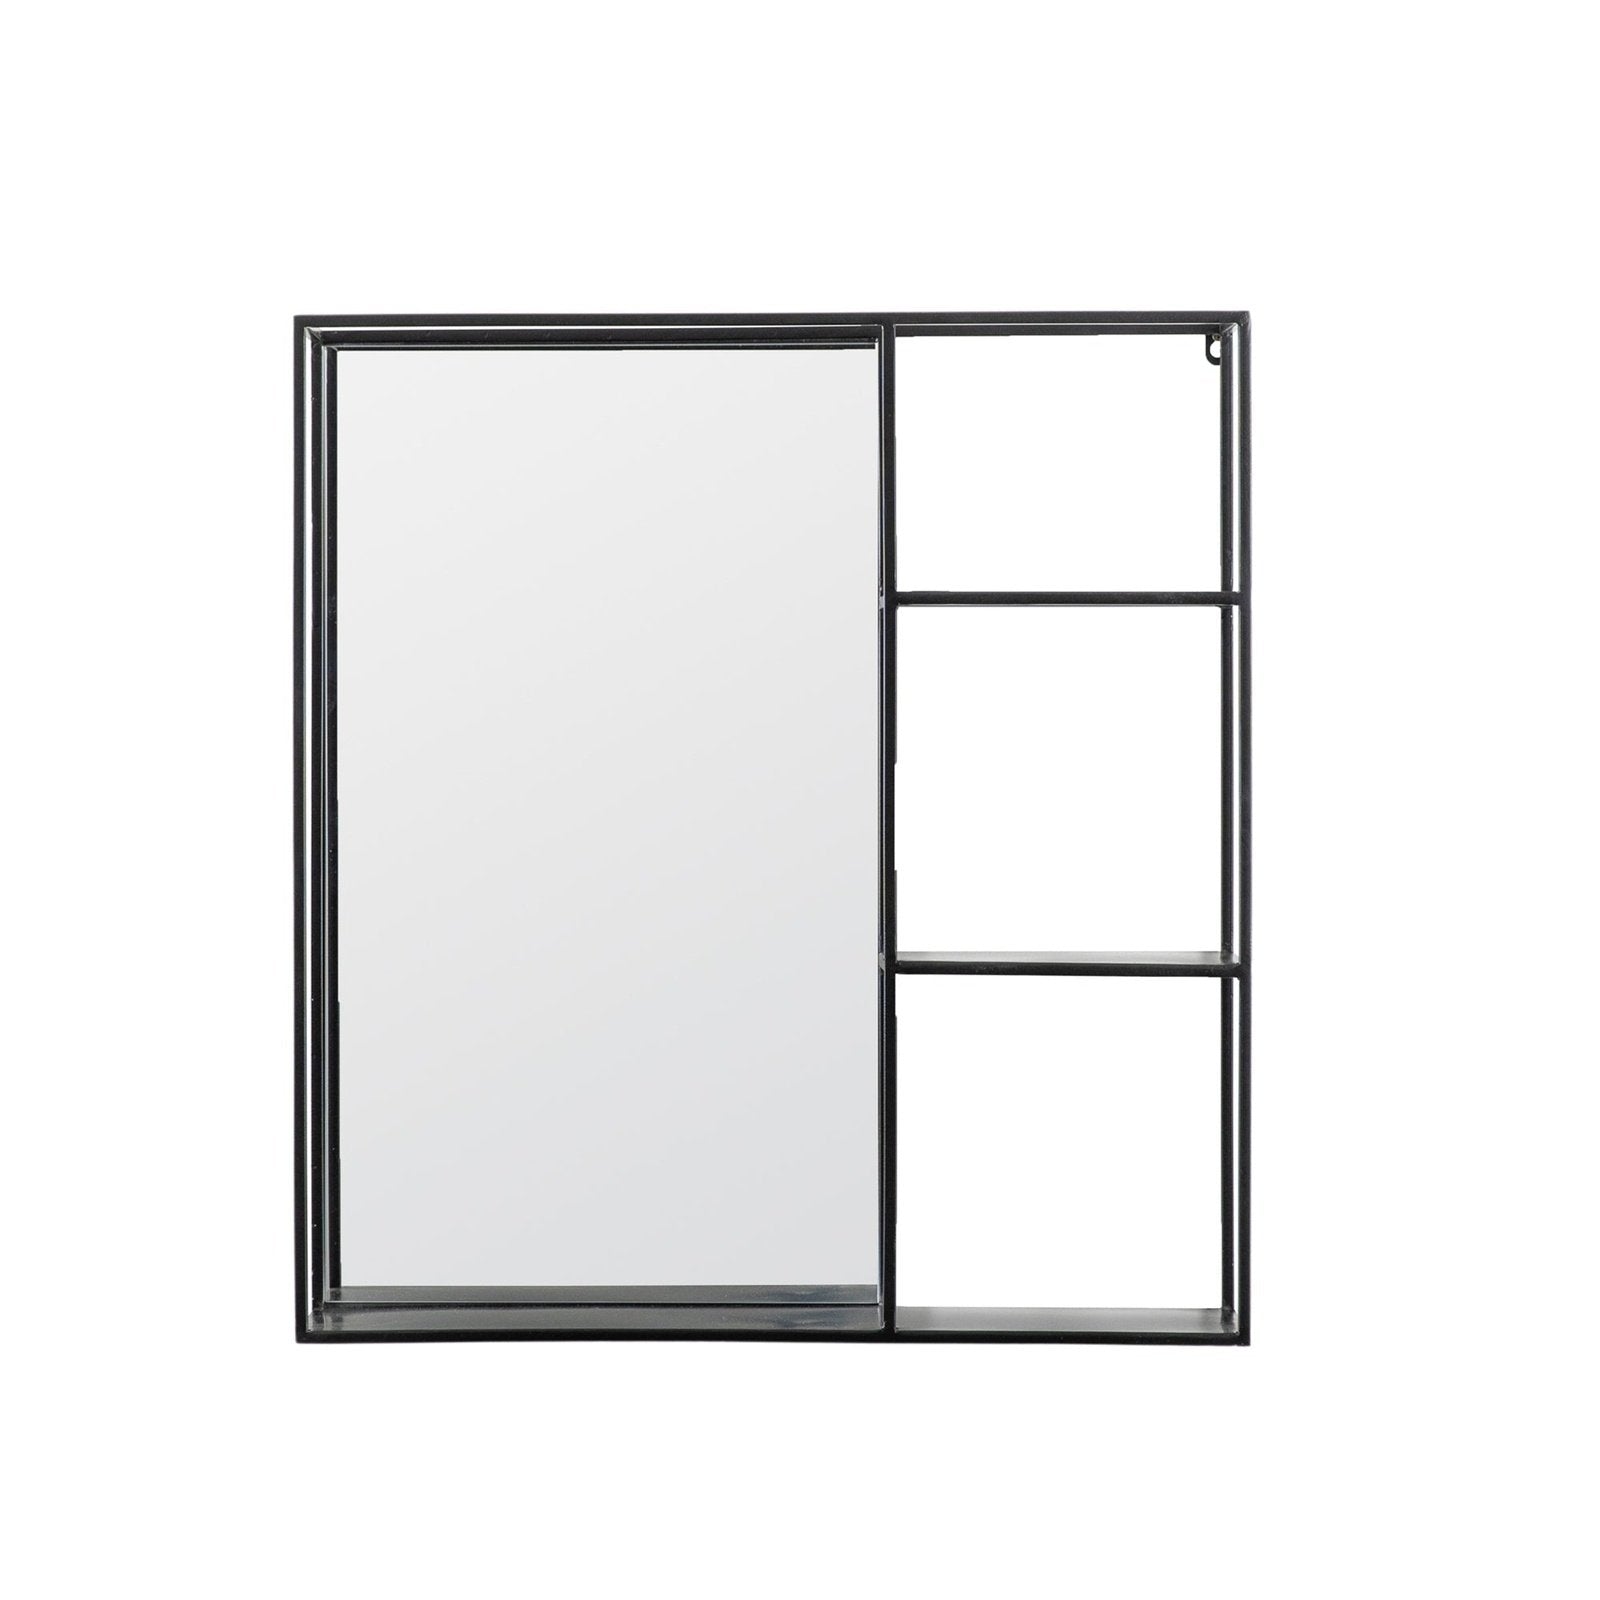 Aura 3-Tier Mirror Shelf in Black